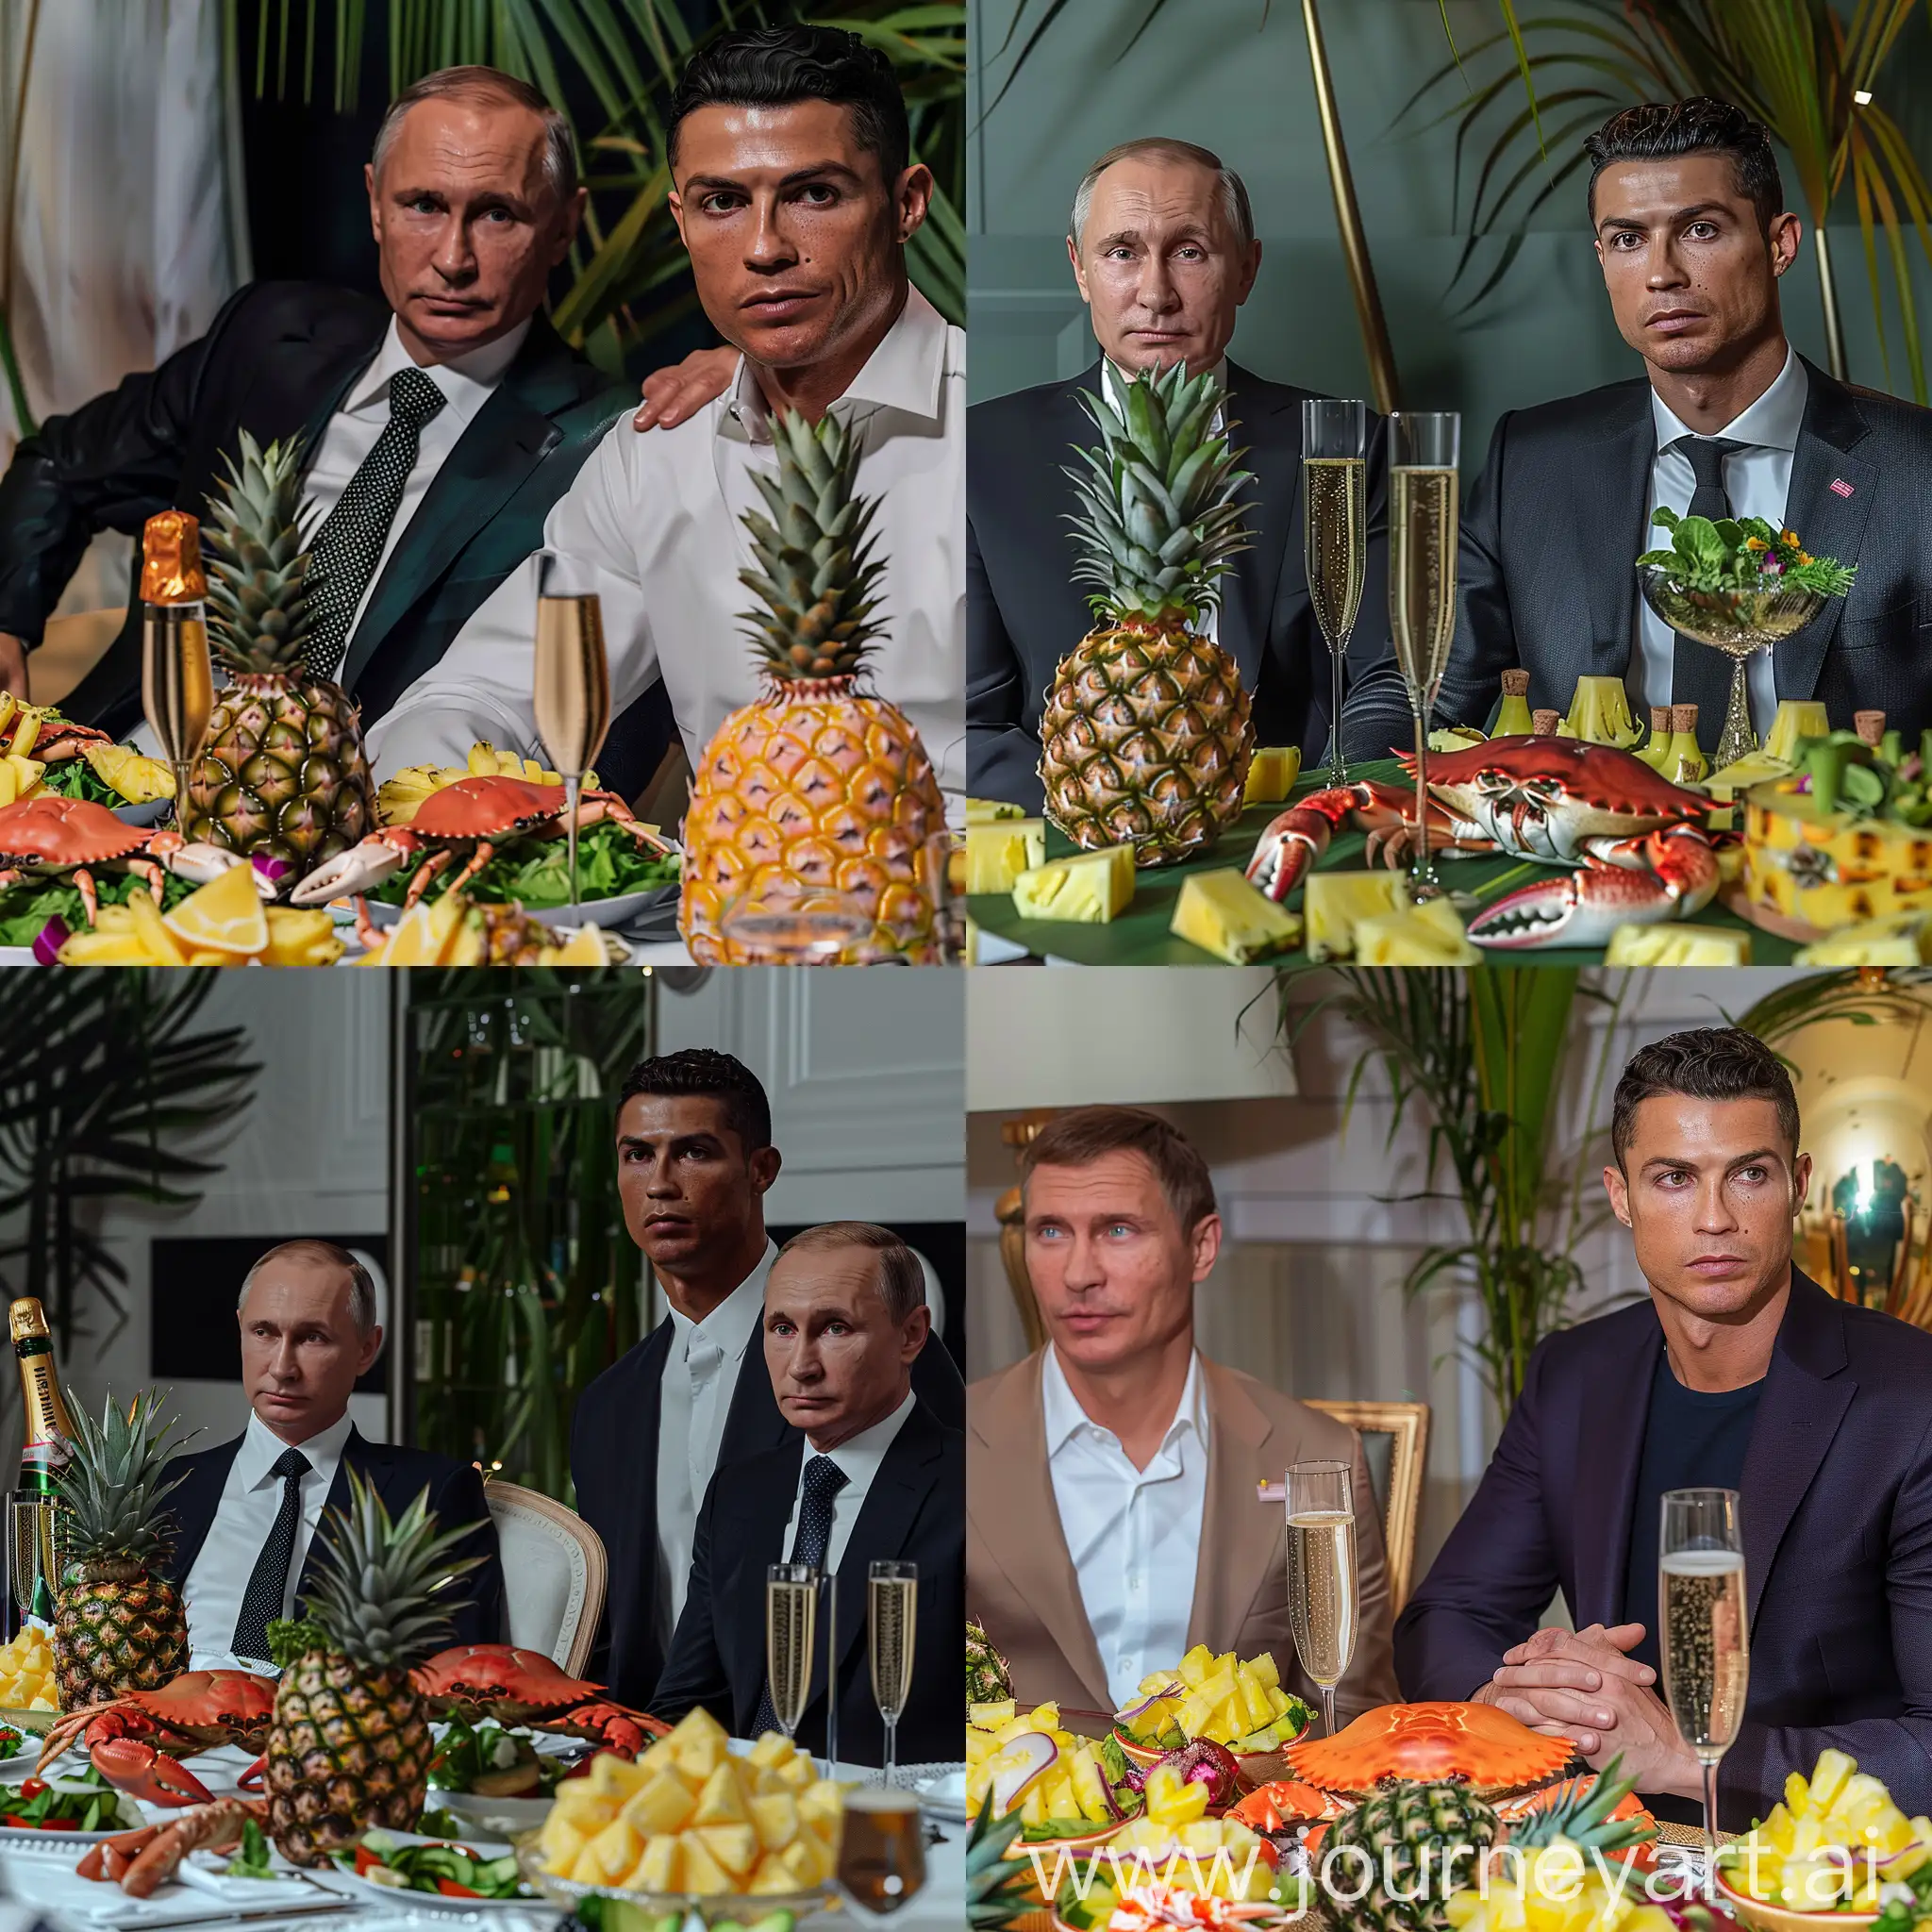 Президент России сидит рядом с Кристиано Роналду, накрытый стол на нем ананас, шампанское, краб, салаты, крупный план, реалистично, 8к, профессиональное освещение, HDR